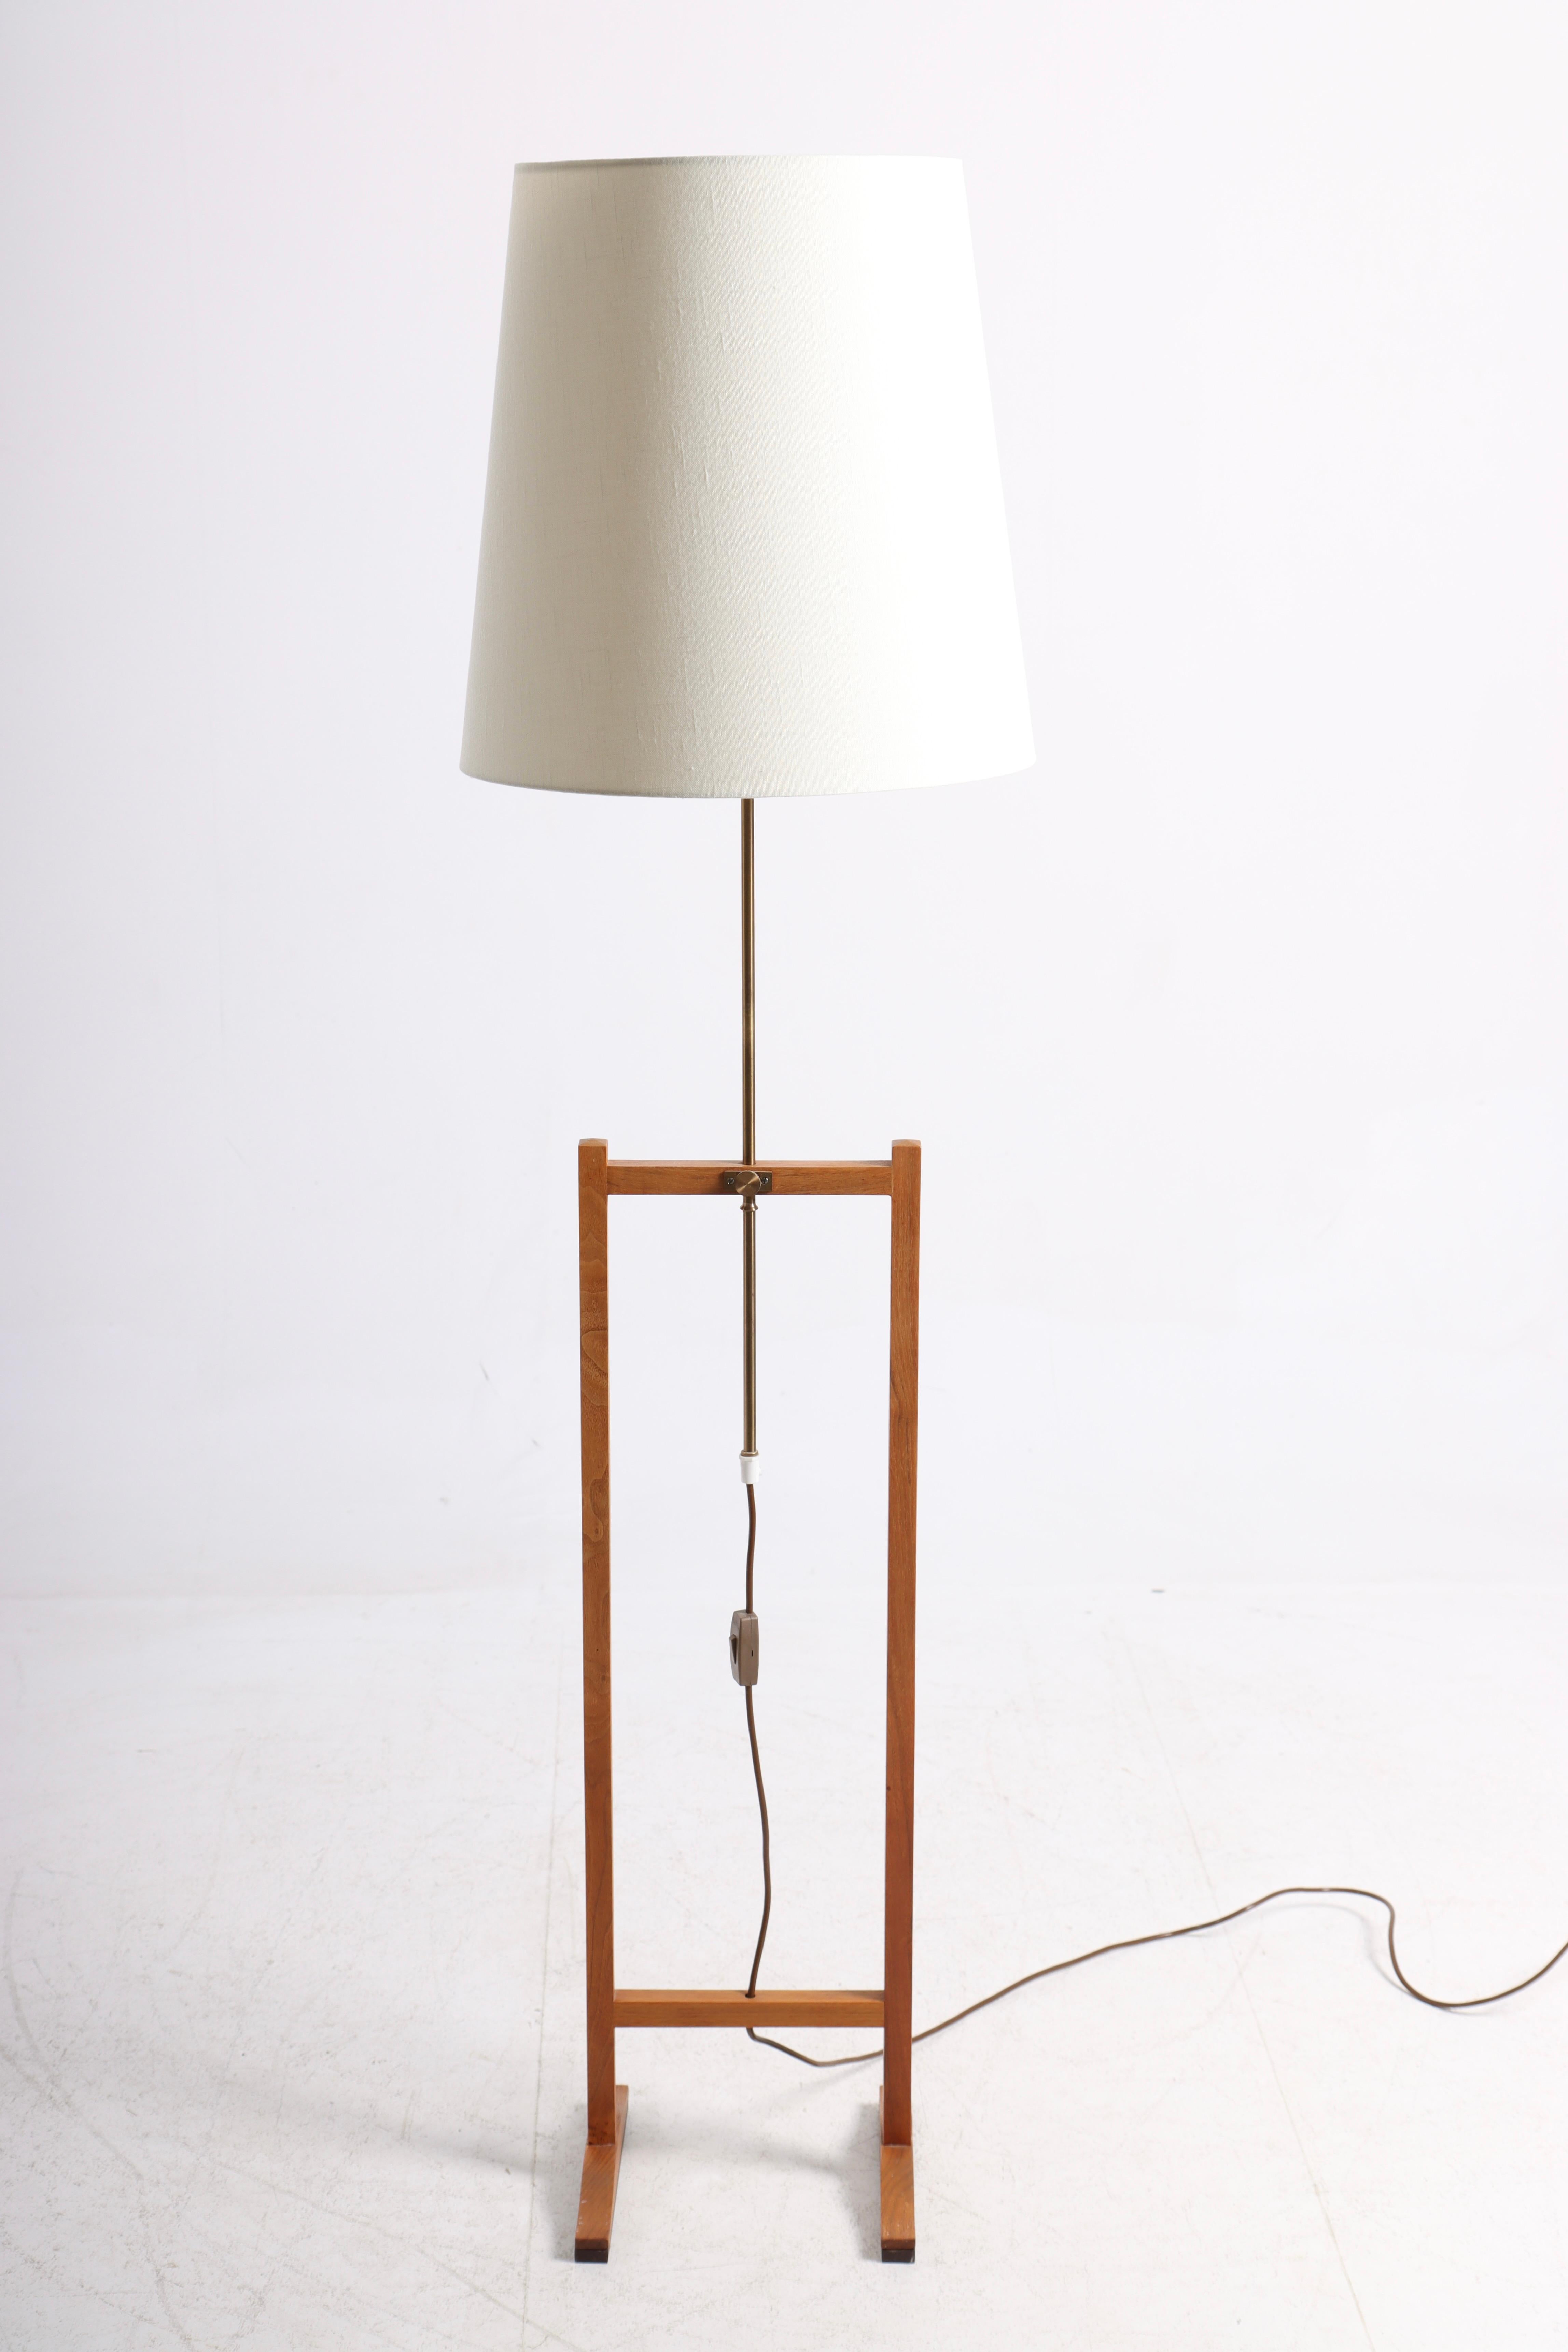 Scandinavian Modern Mid-Century Floor Lamp by Frank Josef, Made in Sweden